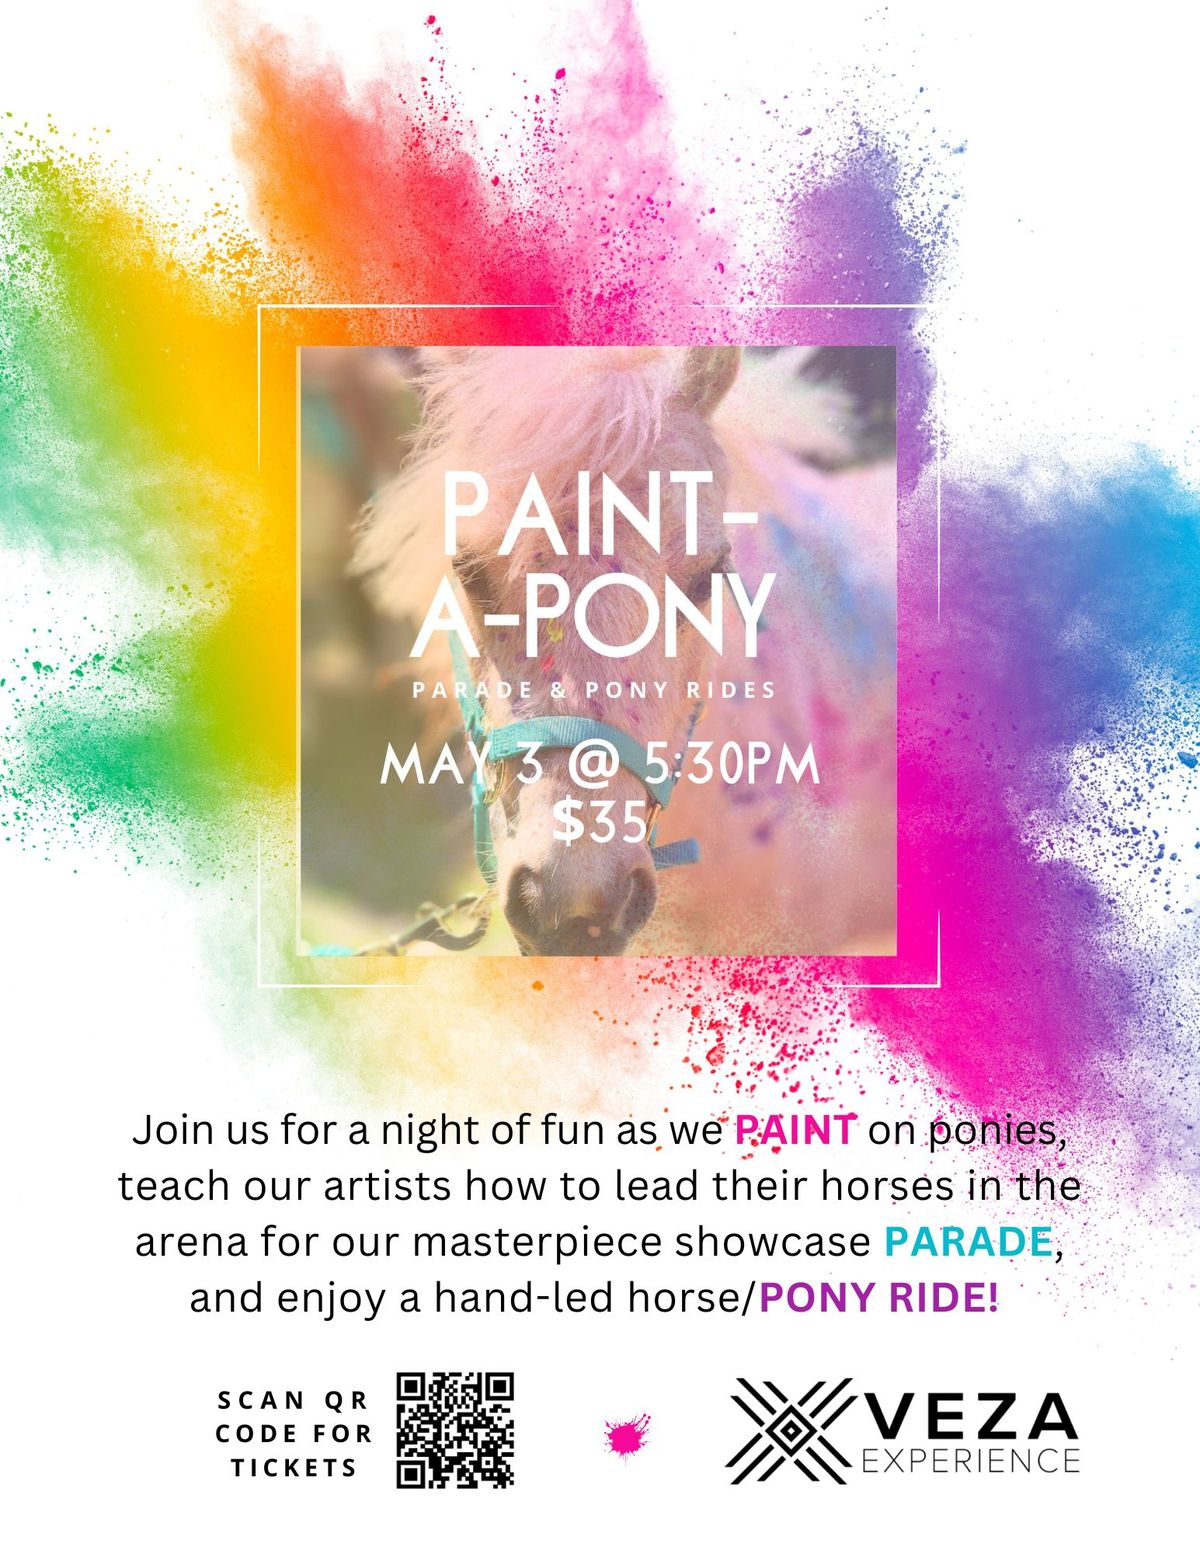 Paint-a-Pony, Artist Parade, & Pony Rides!!!